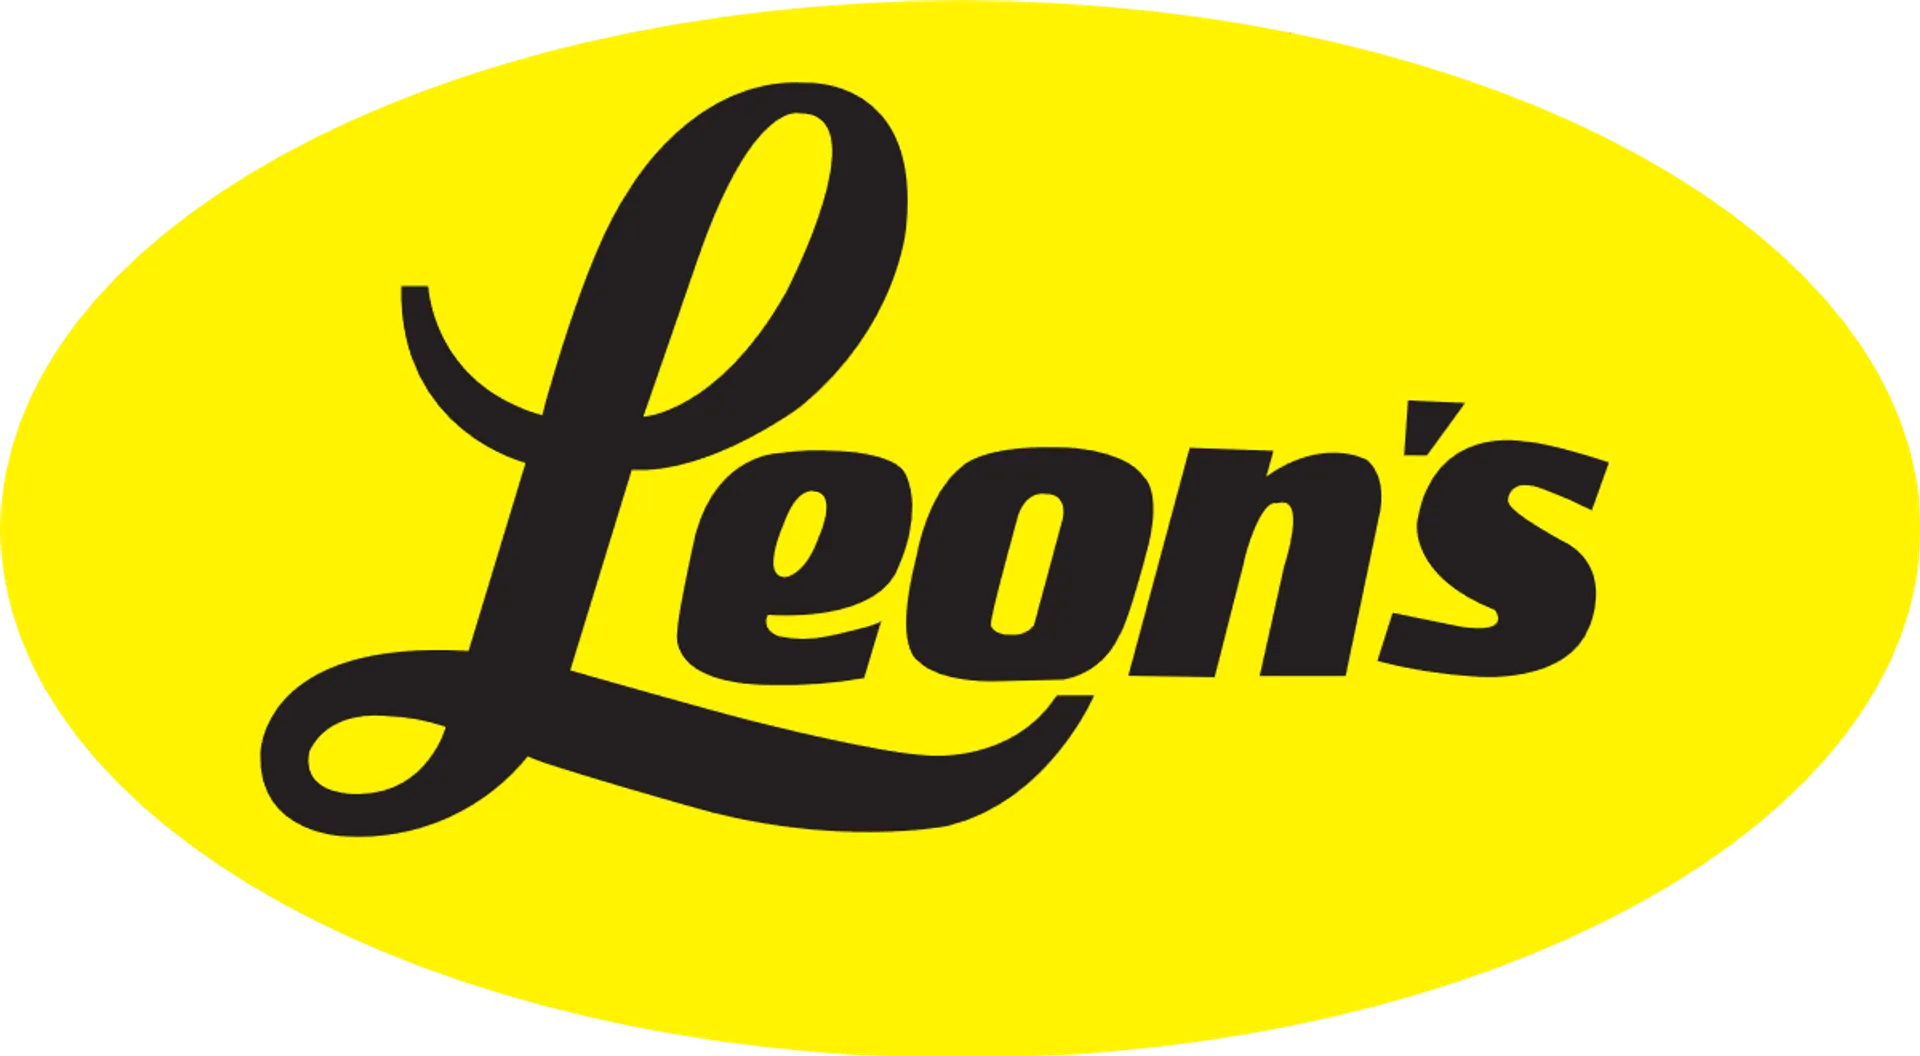 LEON'S logo